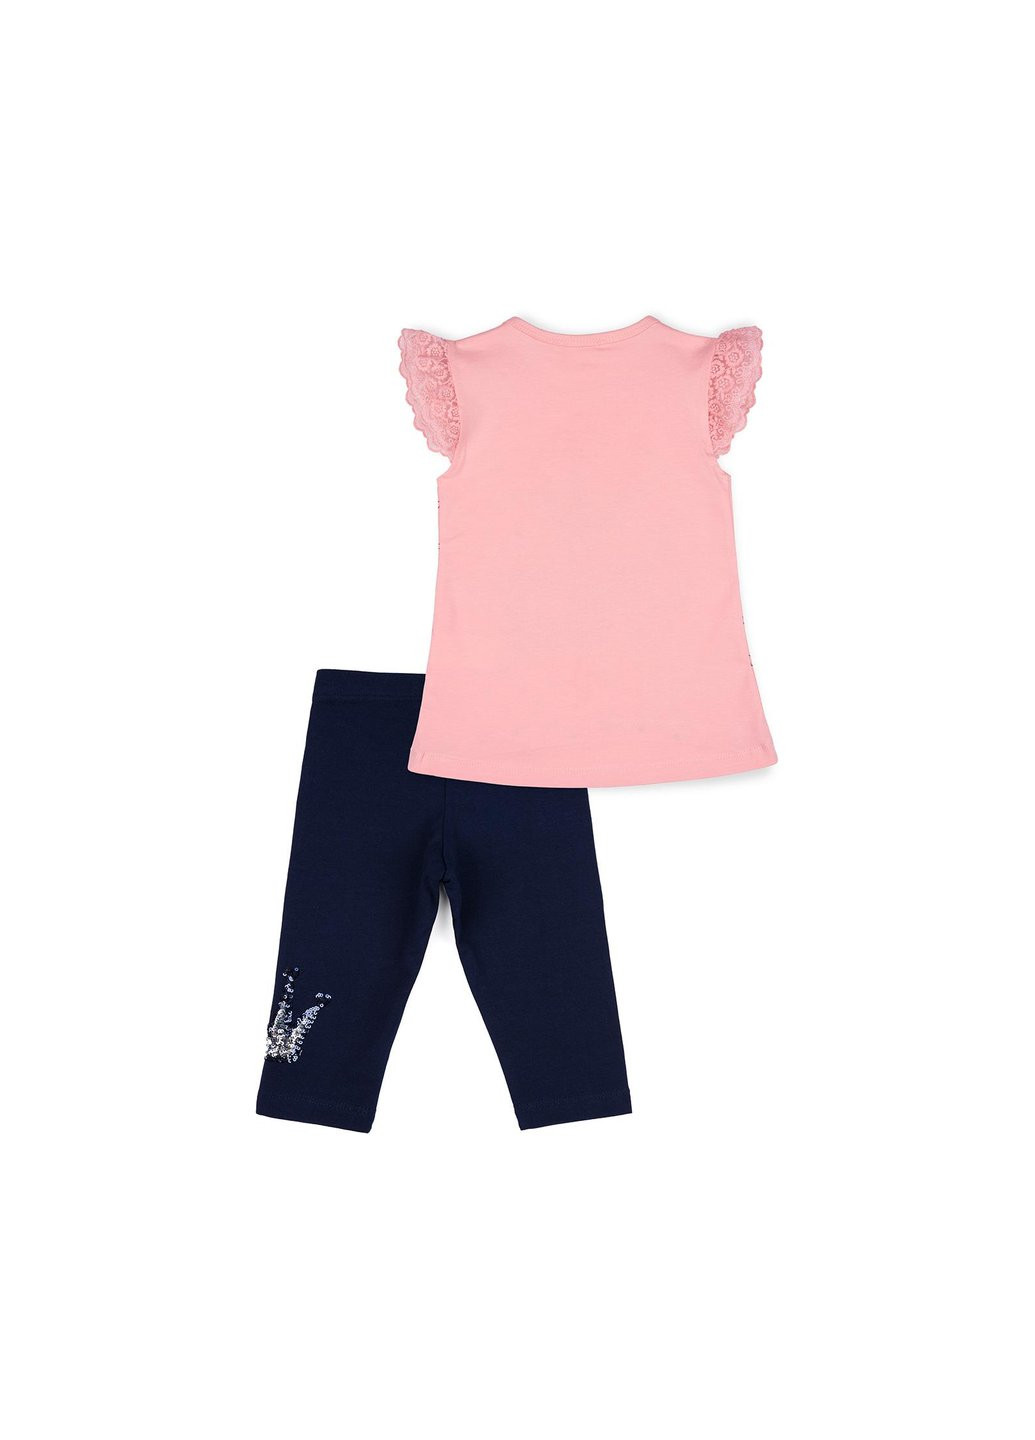 Комбинированный летний набор детской одежды с коронкой из пайеток (10133-98g-peach) Breeze